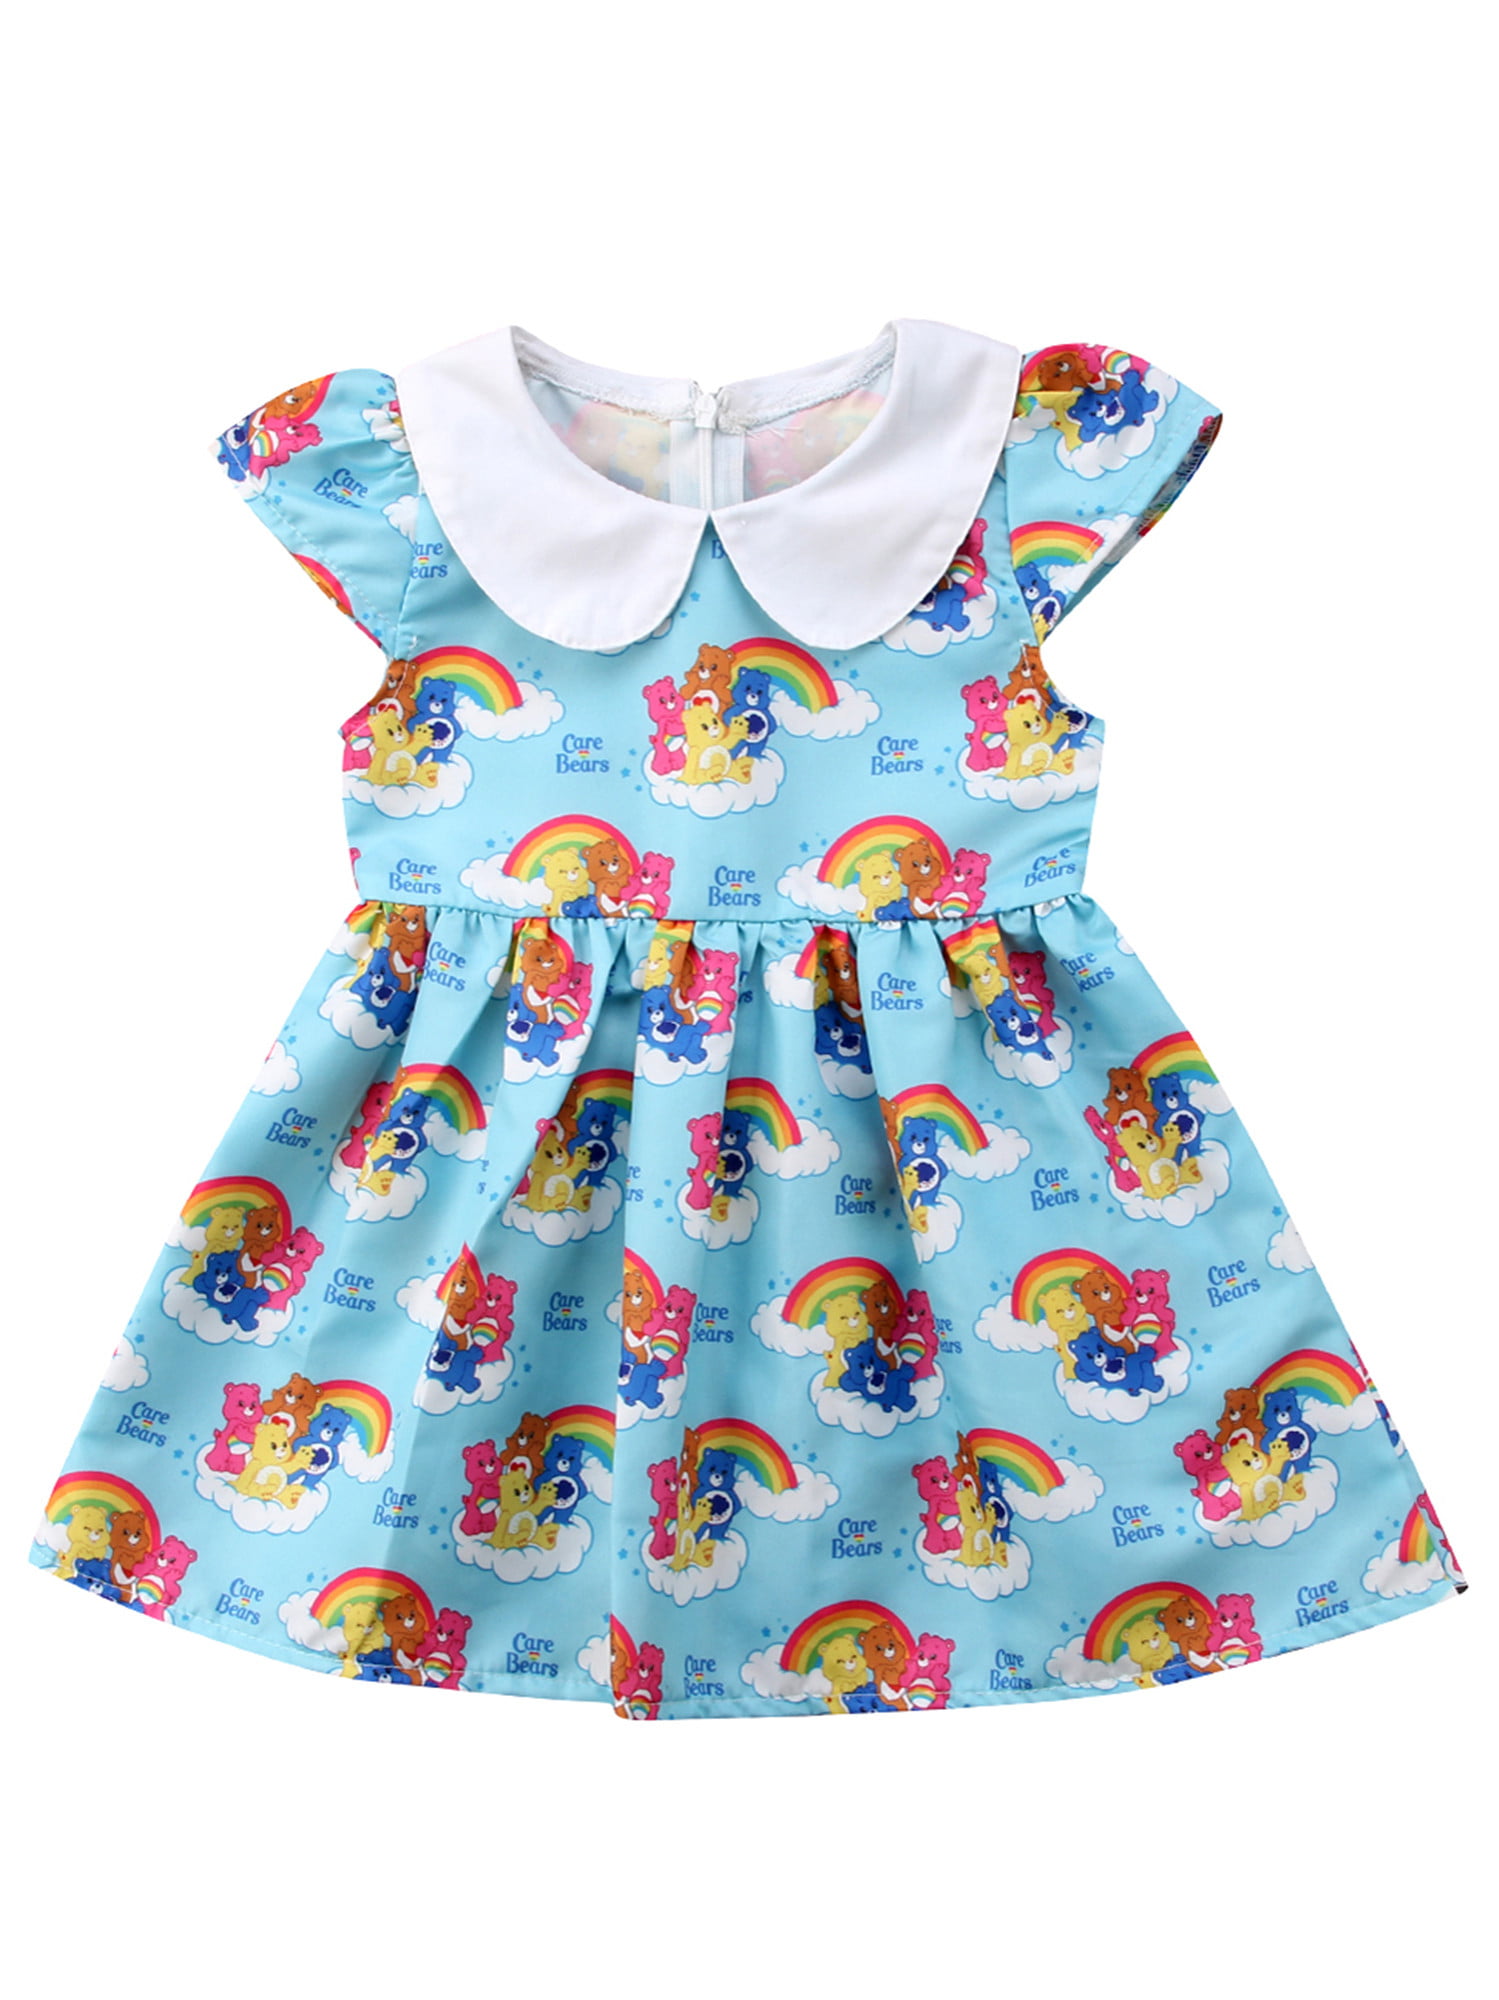 Toddler Girls Baby Princess Dress Cartoon Print Dresses 